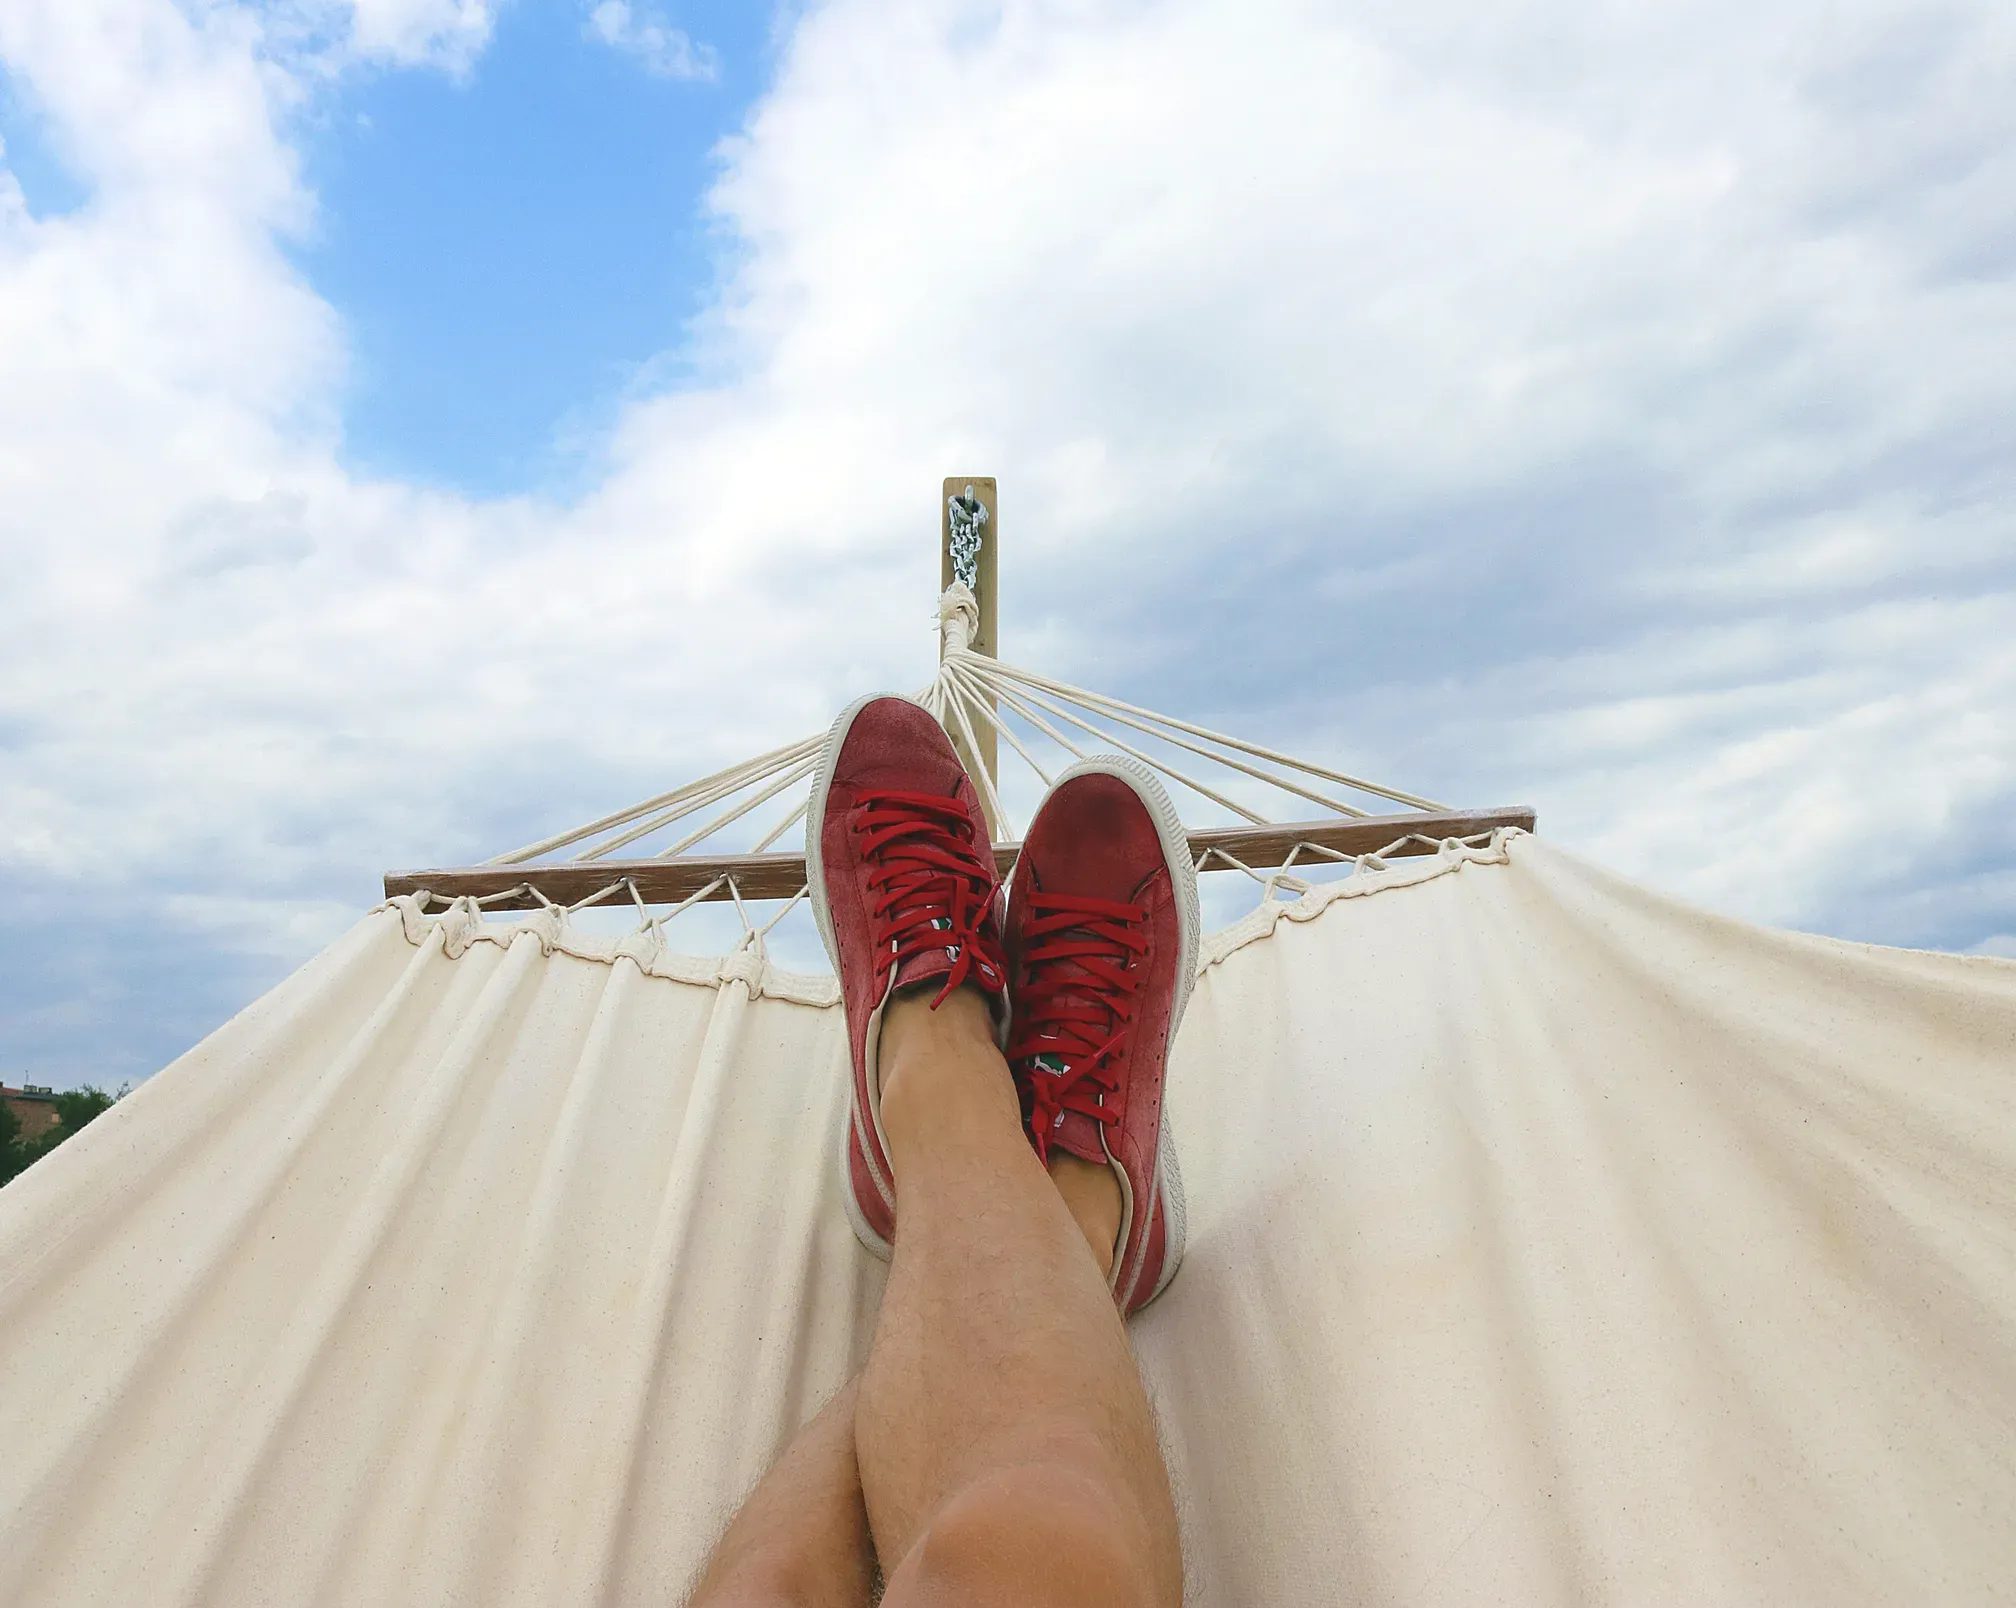 Legs crossed on a hammok relaxing